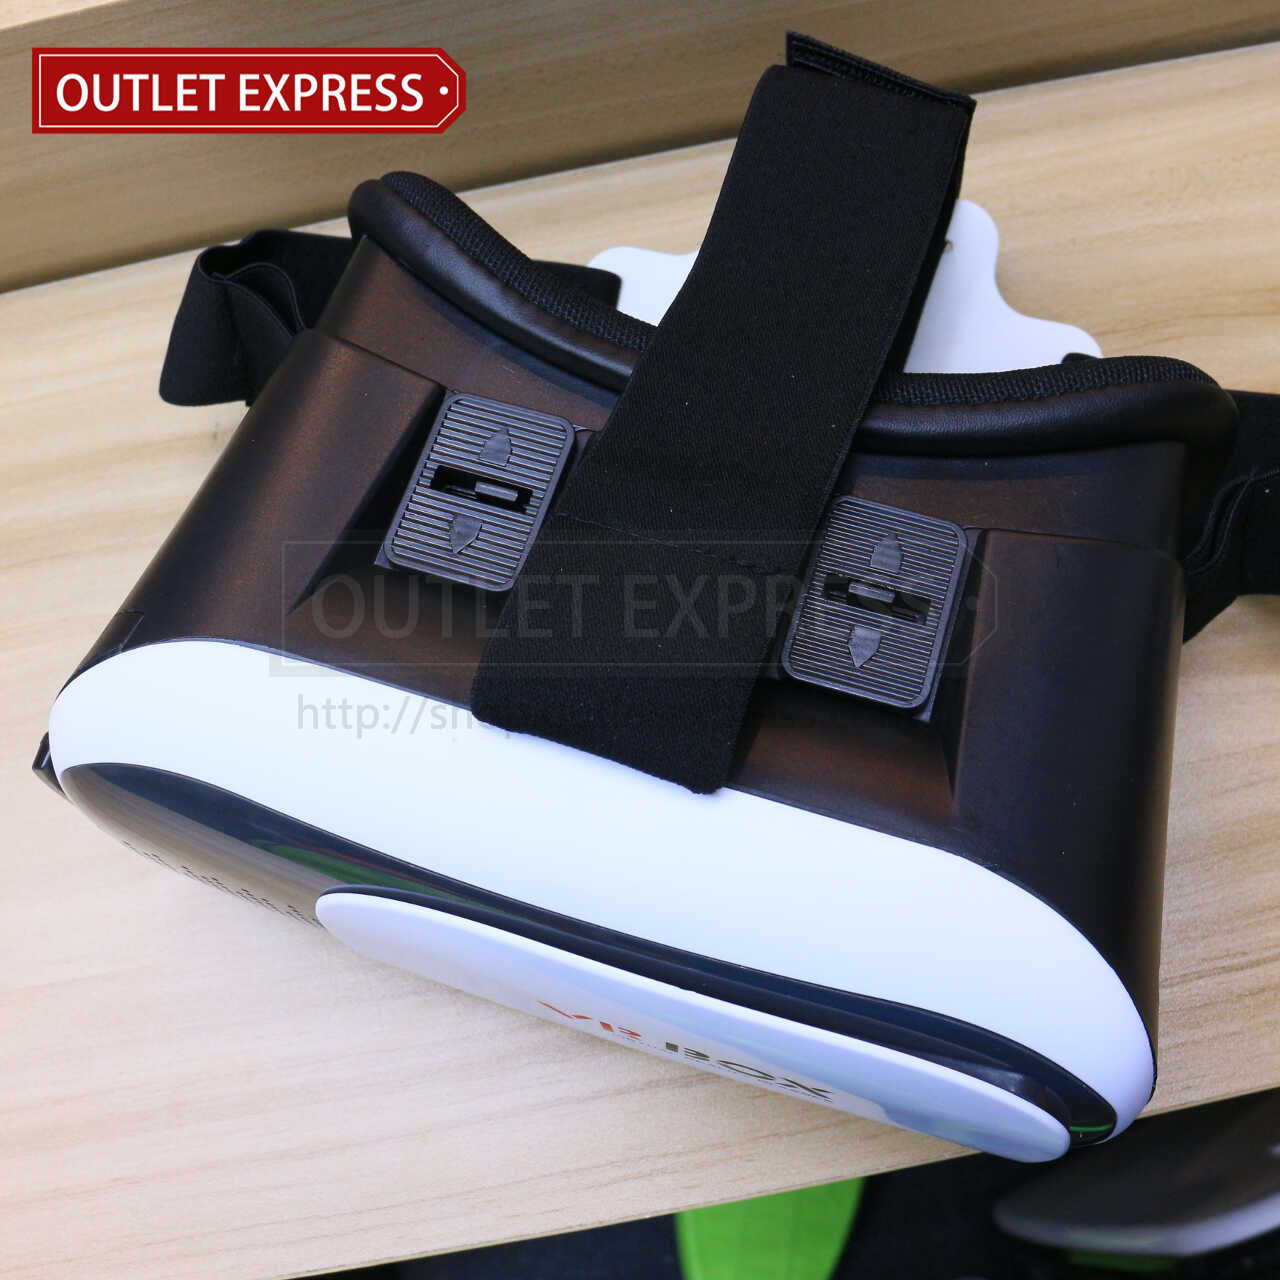 2代 VR BOX虛擬實境眼鏡 蓋部 - Outlet Express HK生活百貨城實拍相片